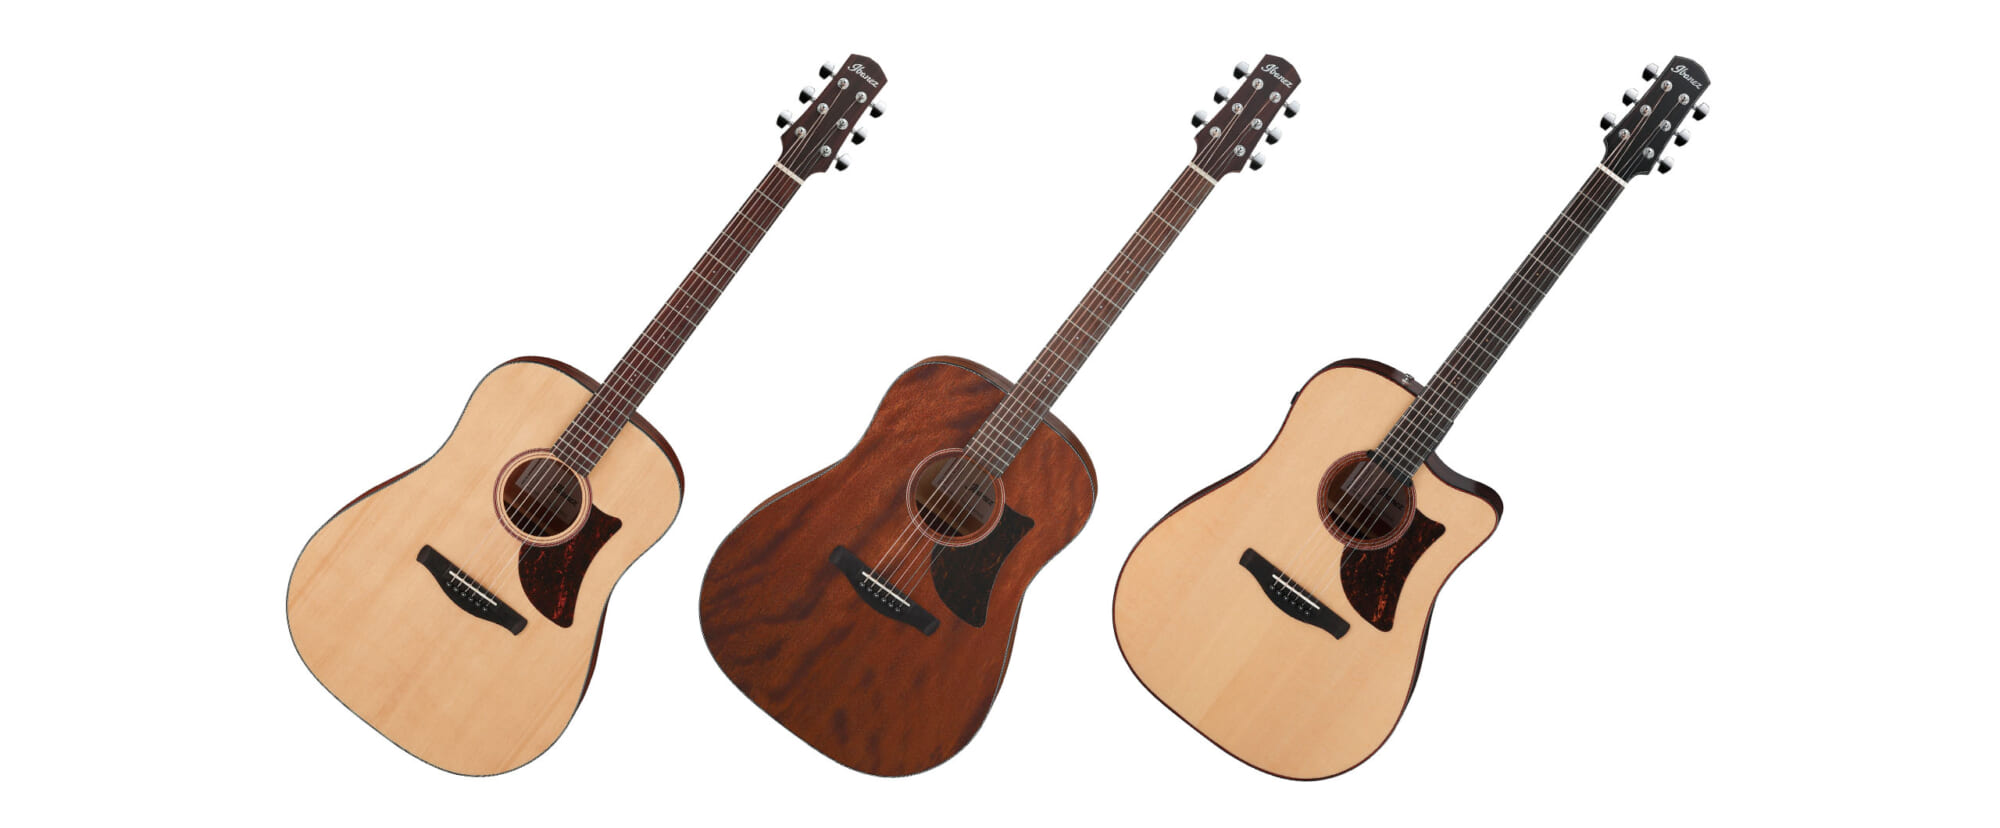 アイバニーズの新シリーズ“Advanced Acoustic”より、ドレッドノートの進化系アコースティック・ギターが登場